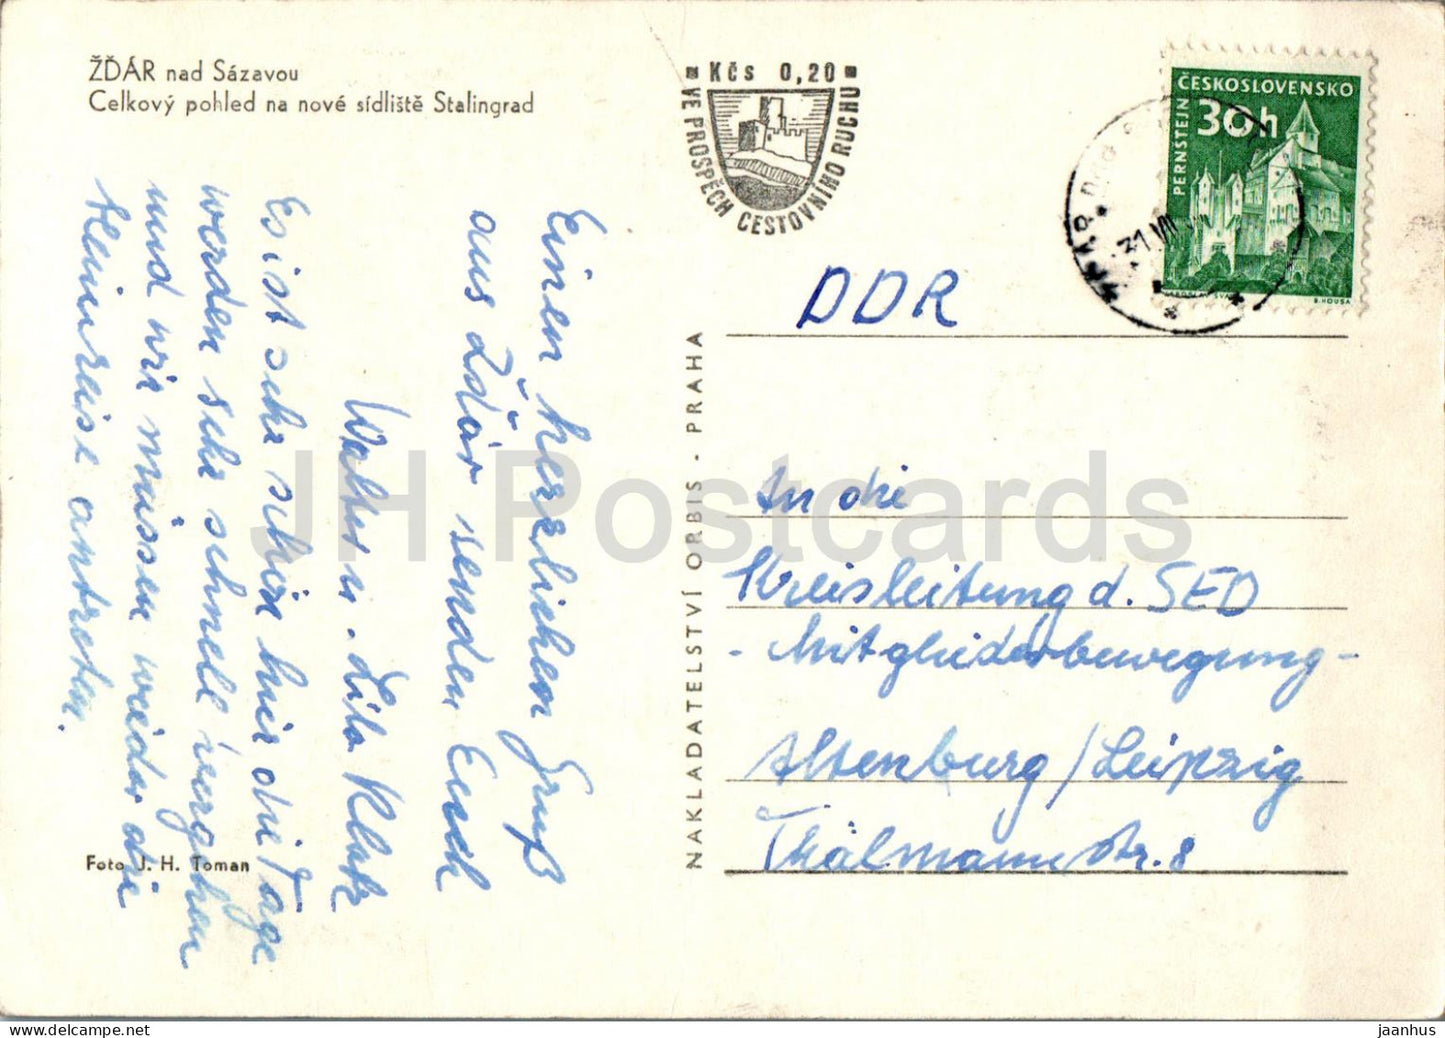 Zdar nad Sazavou - Celkovy pohled - general view - old postcard - Czech Repubic - Czechoslovakia - used